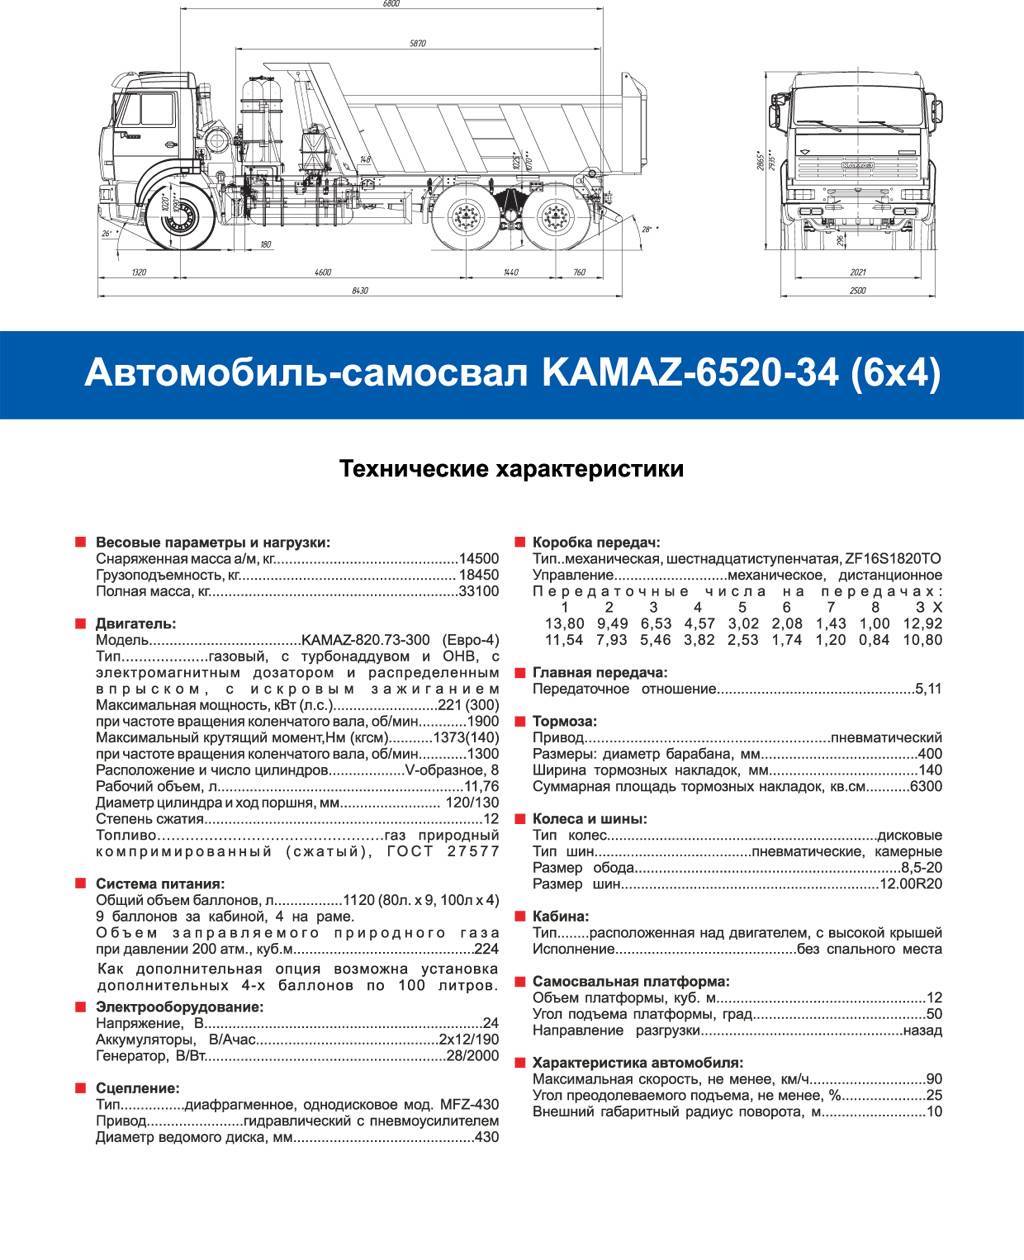 Газ-52: технические характеристики